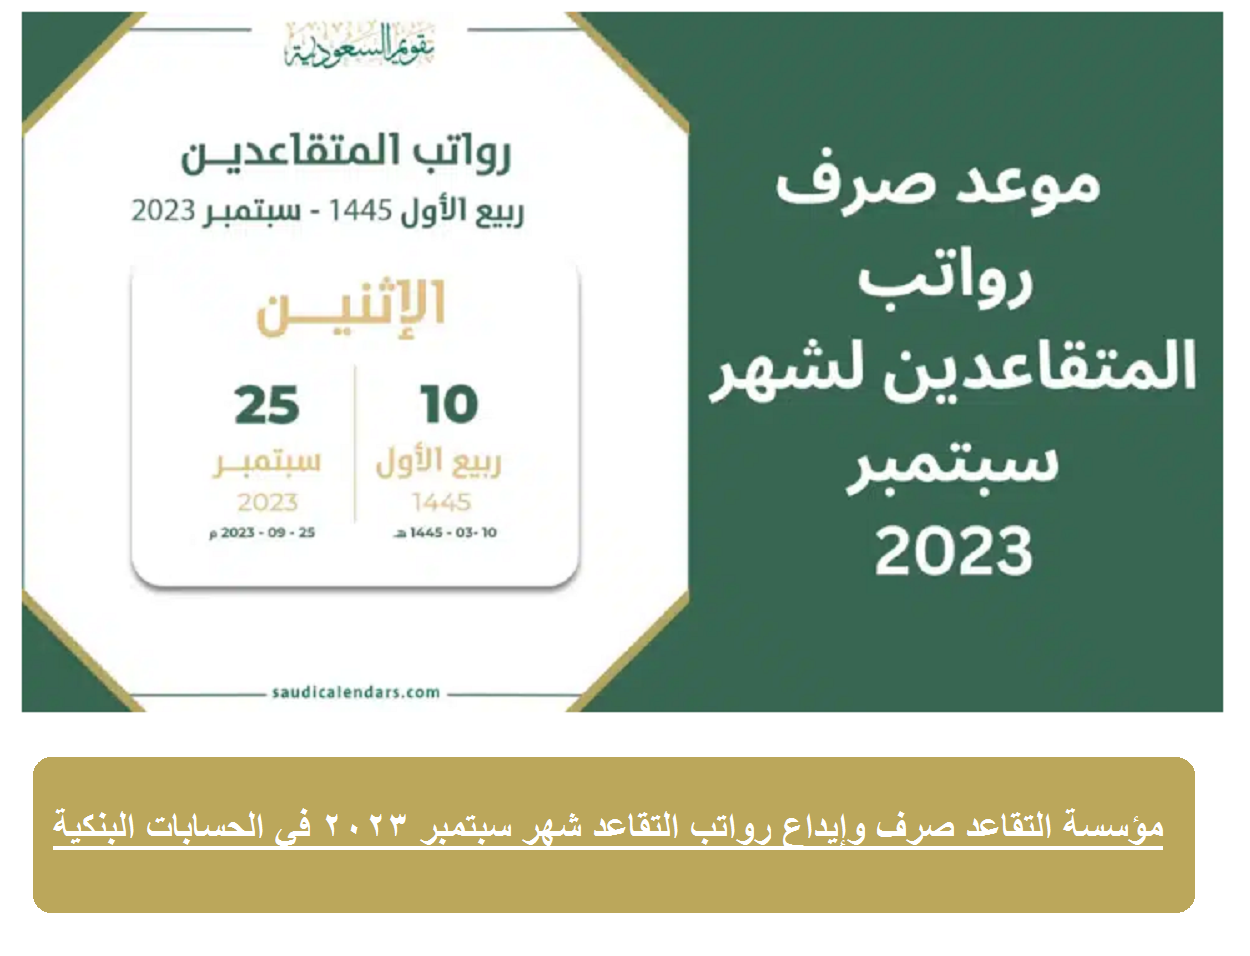 عربي ودولي  مؤسسة التقاعد صرف وإيداع رواتب التقاعد شهر سبتمبر 2023 في الحسابات البنكية خلال أيام